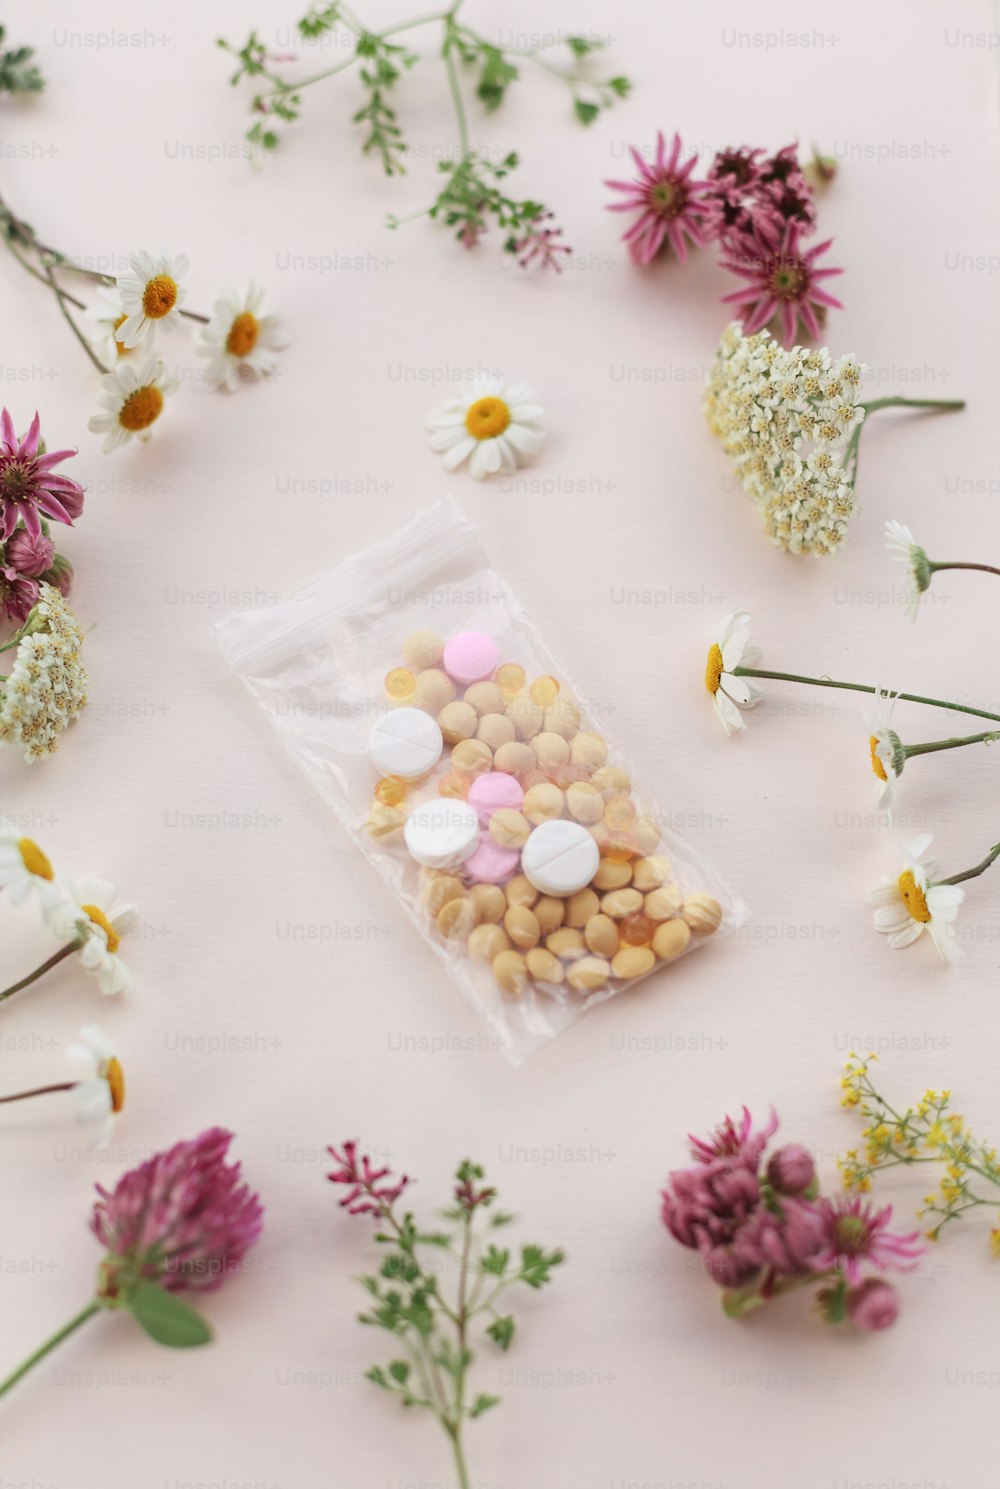 un sac de pilules posé sur une table à côté de fleurs